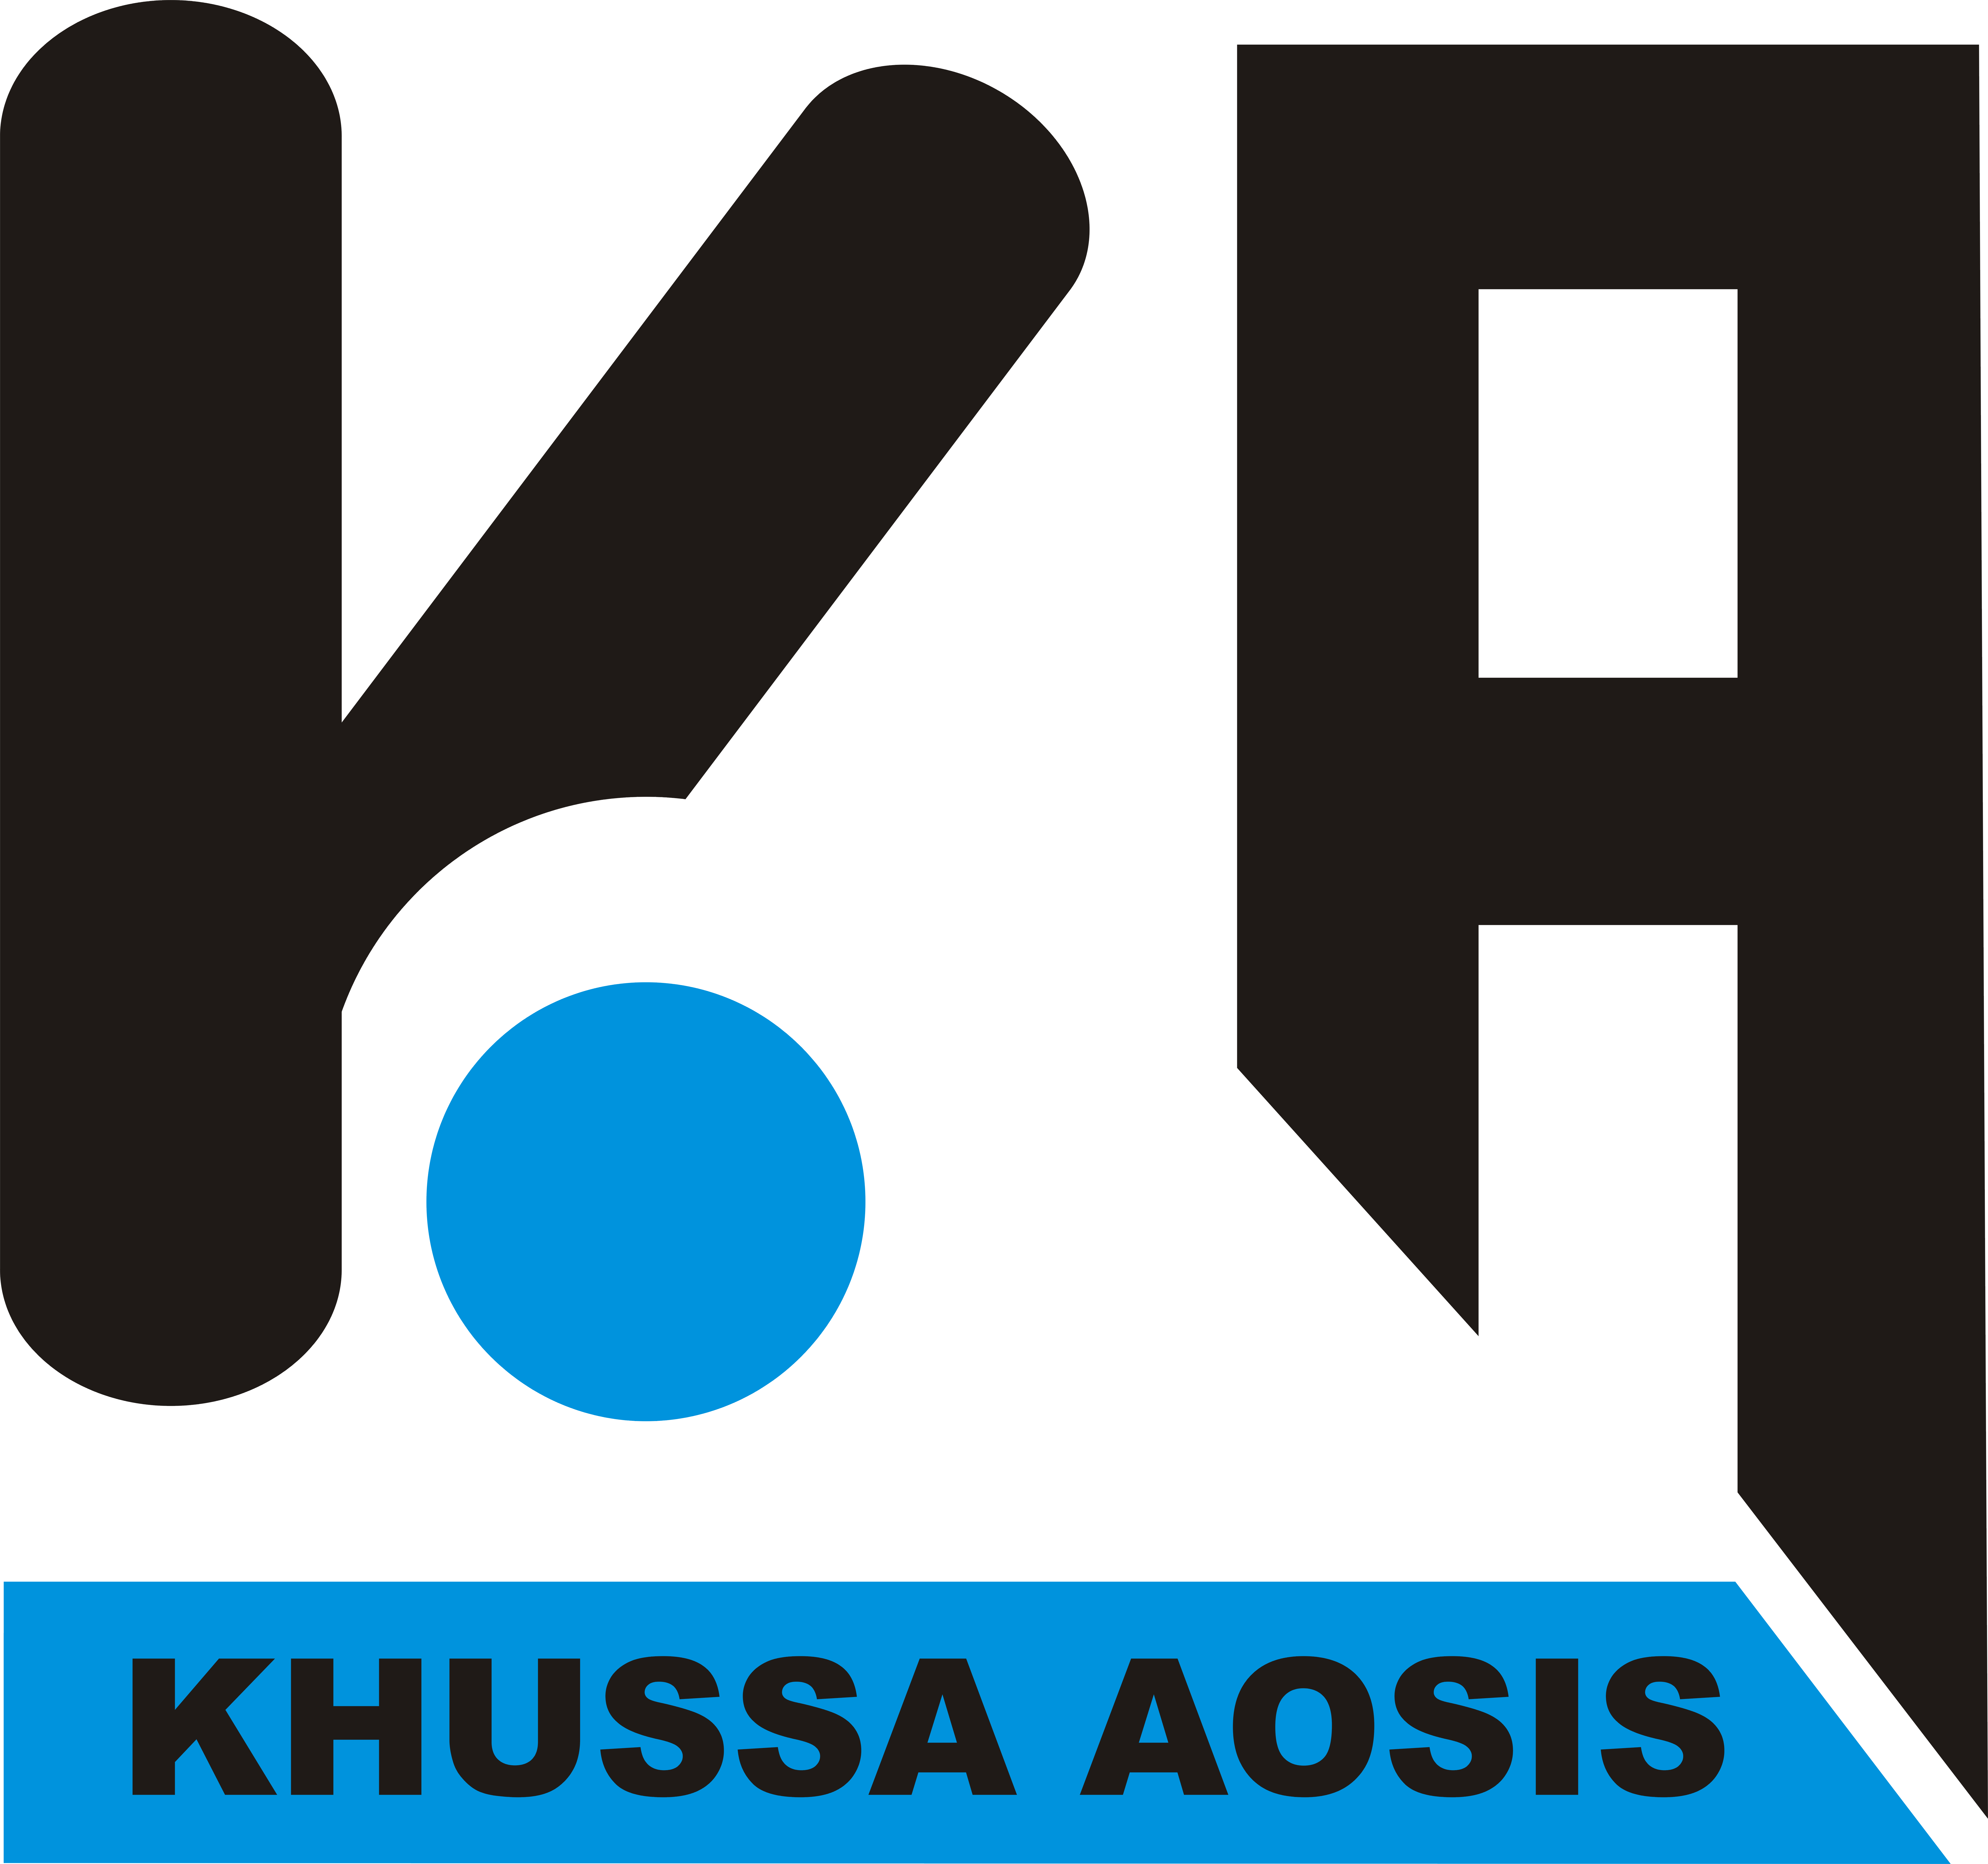 Khussa Aosis